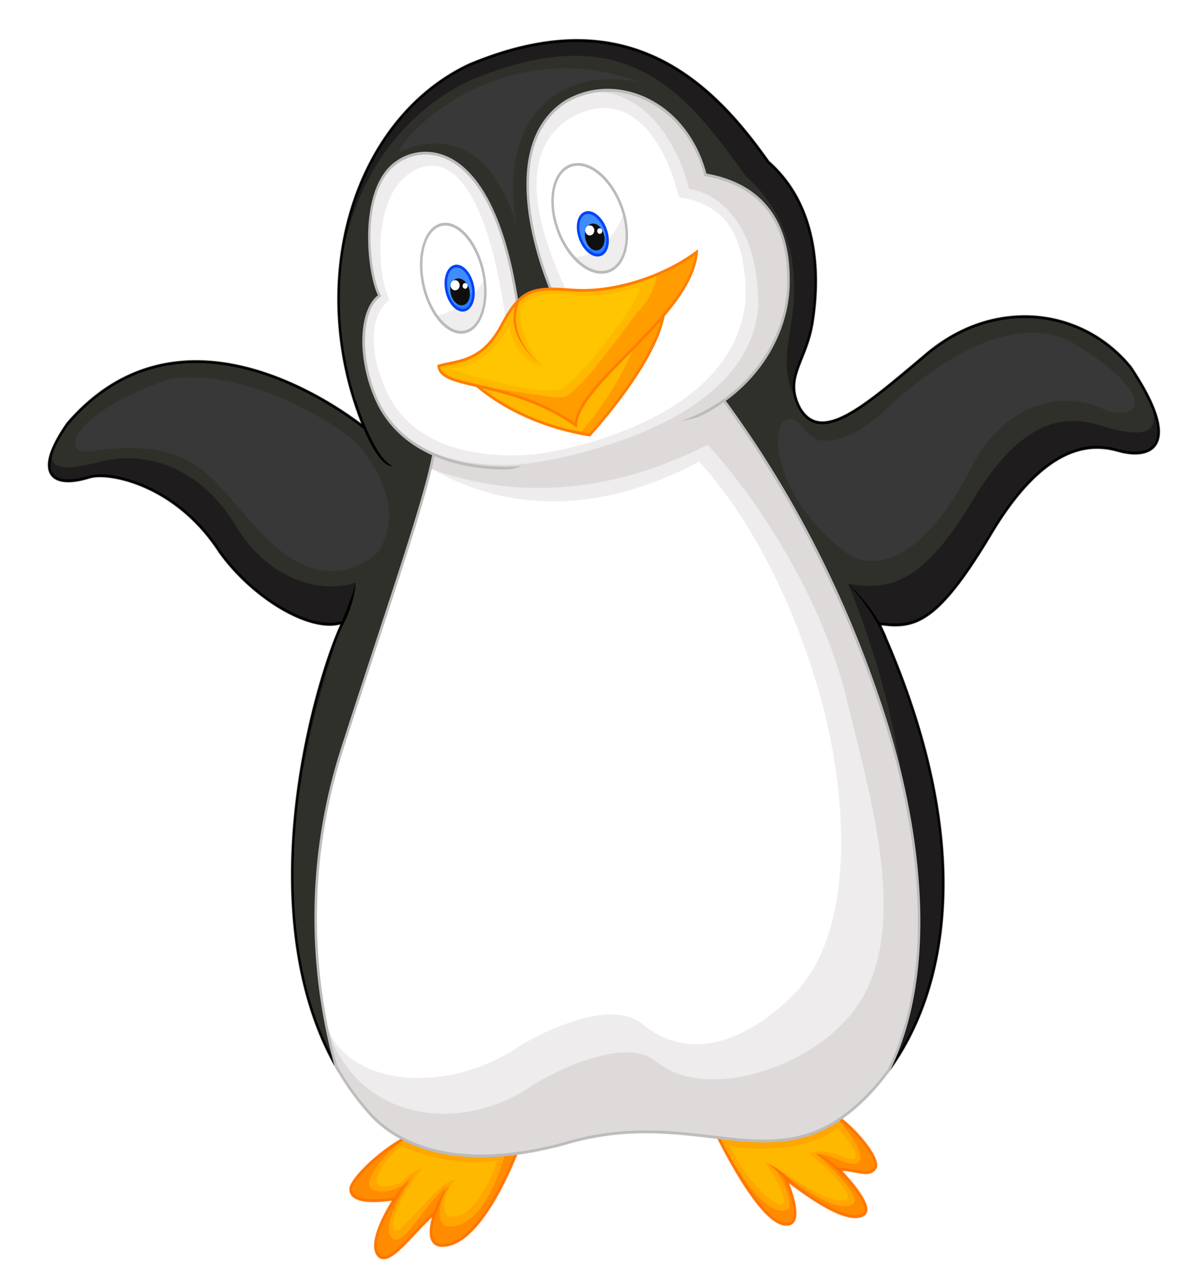 Penquin penguin friend